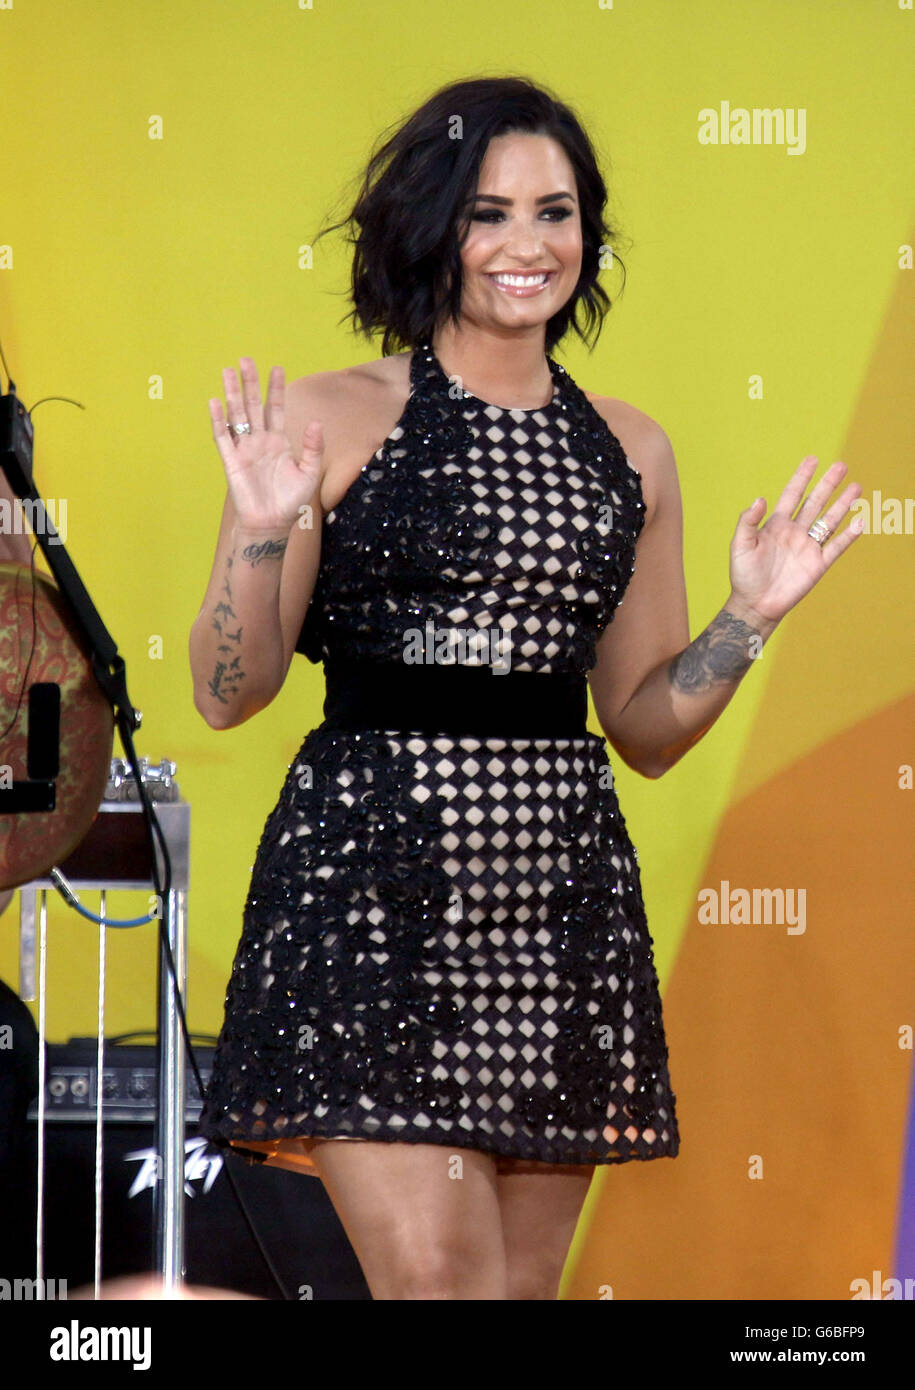 24 juin 2016 - New York, New York, États-Unis - Chanteur Demi Lovato joue sur 'Good Morning America' qui s'est tenue à Central Park. (Crédit Image : © Kaszerman ZUMA Nancy via le fil) Banque D'Images